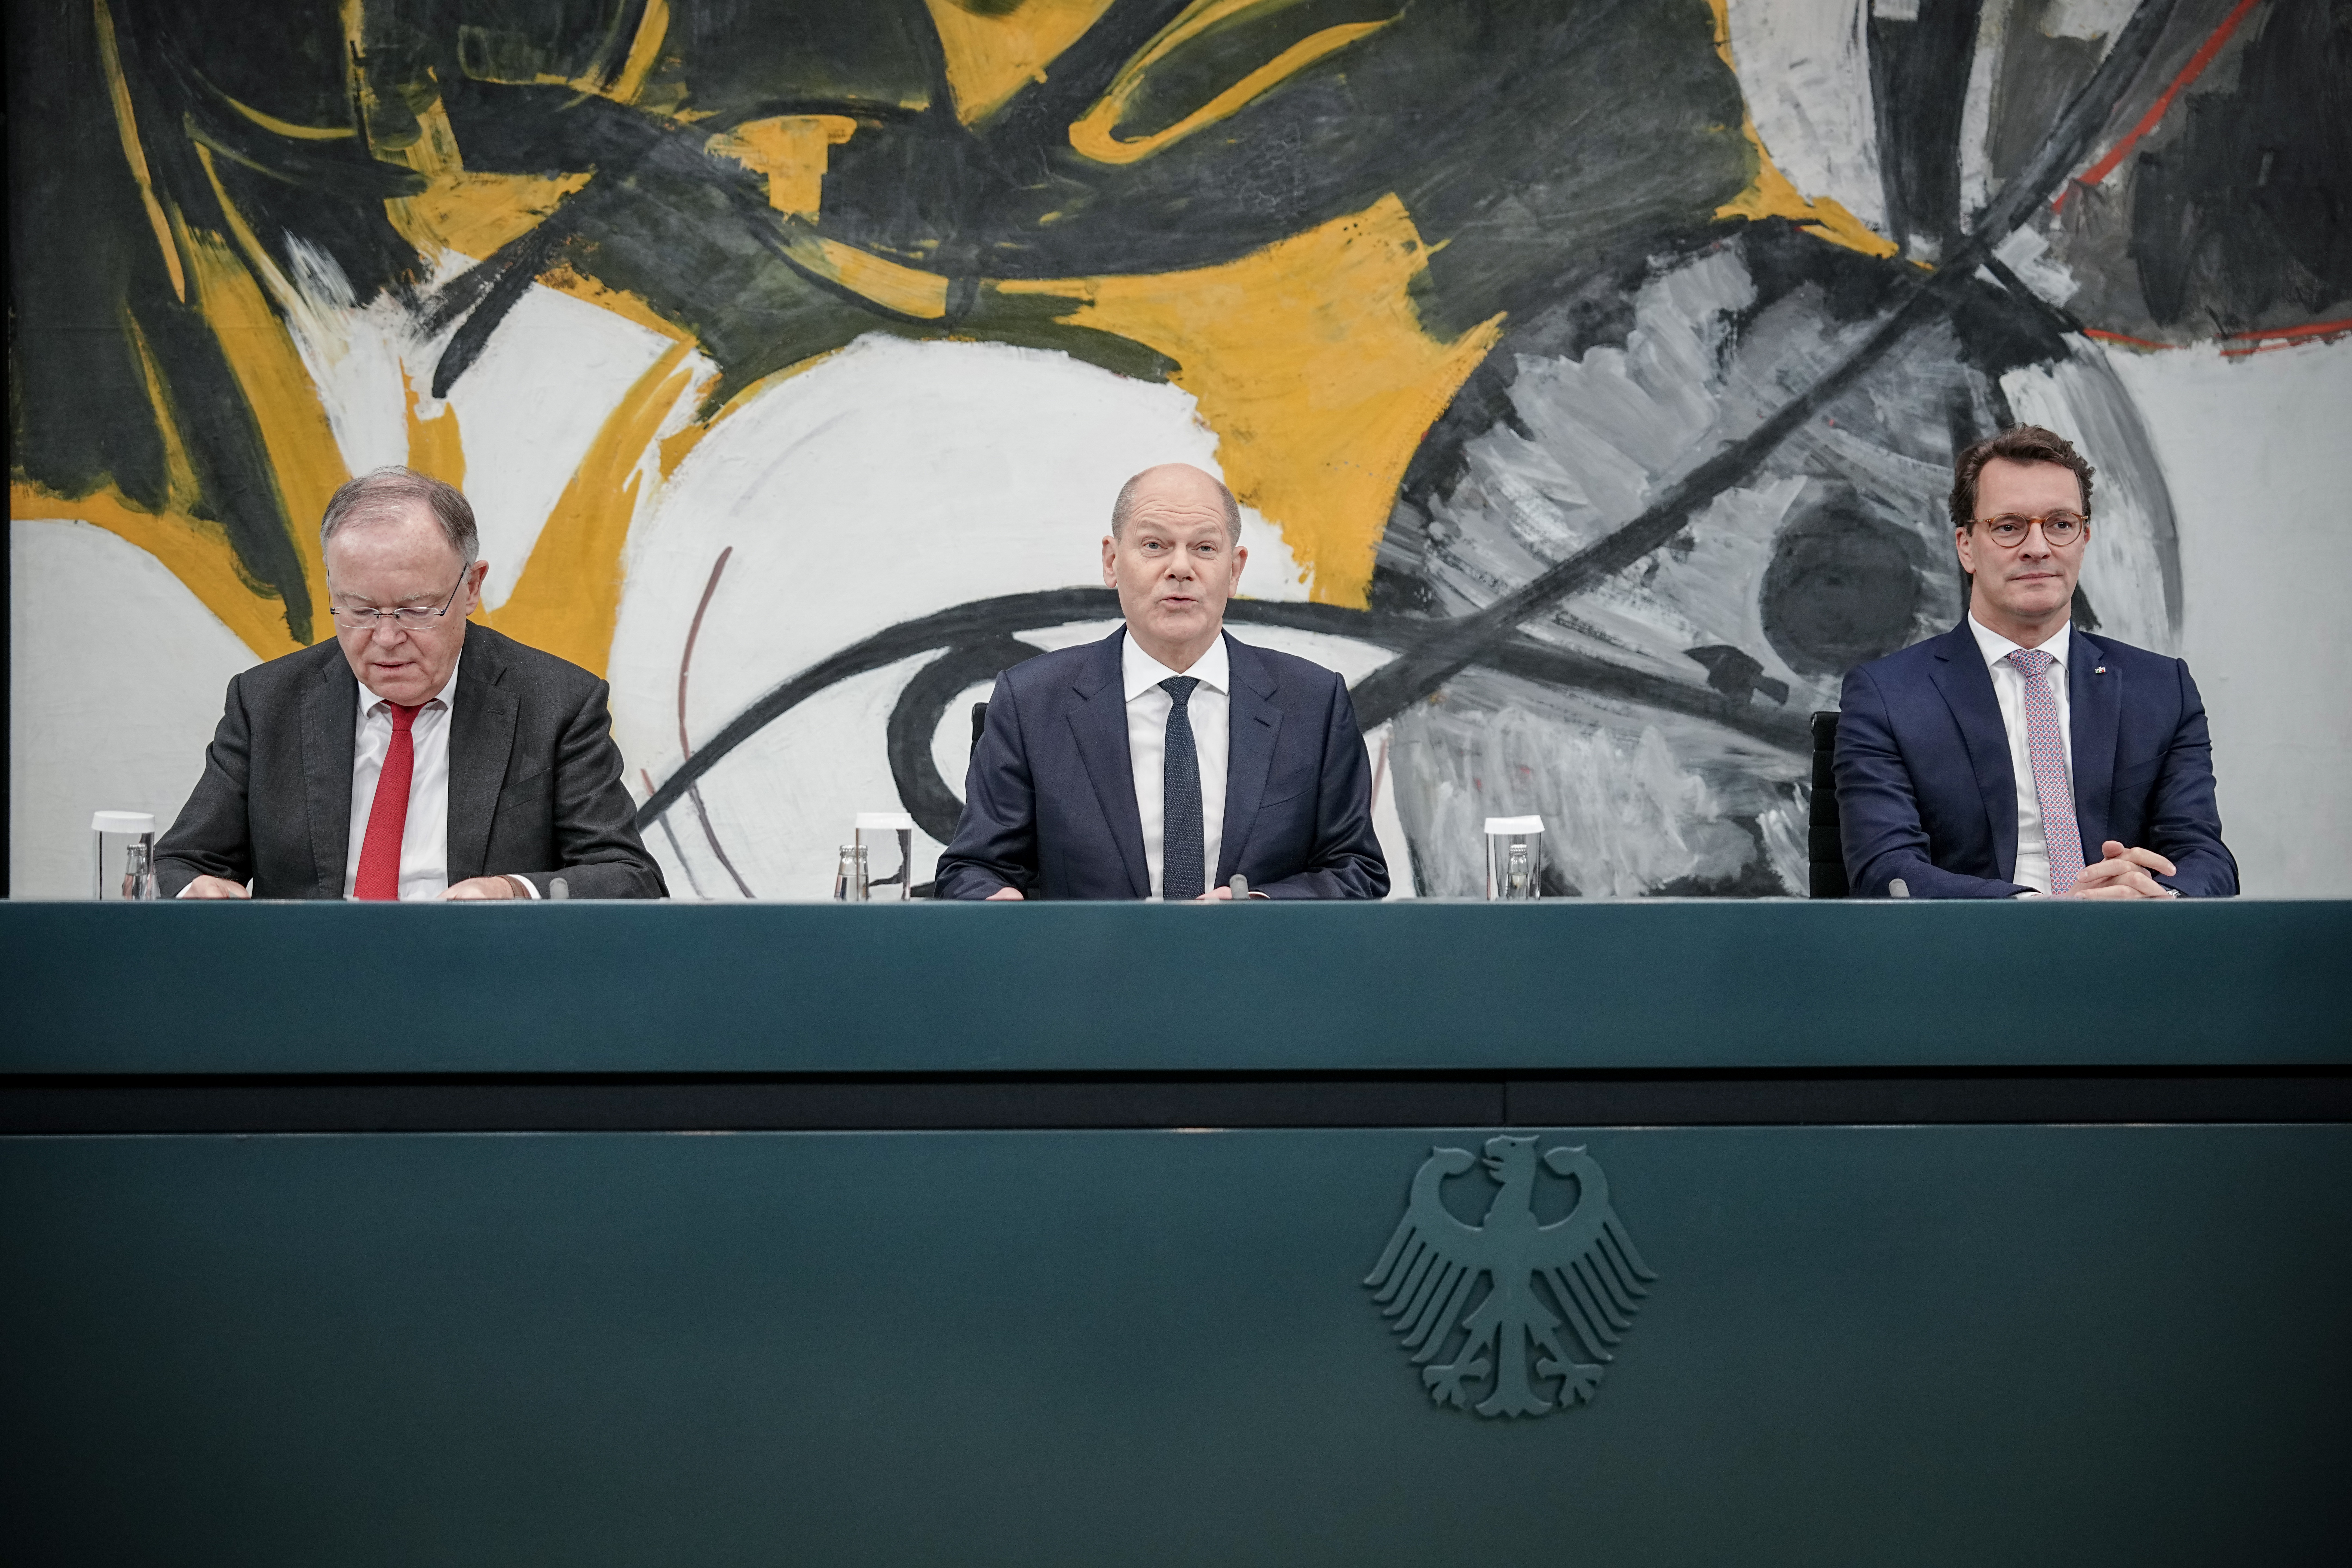 Stephan Weil (vl, SPD), Ministerpräsident von Niedersachsen, Bundeskanzler Olaf Scholz (SPD) und Hendrik Wüst (CDU), Ministerpräsident von Nordrhein-Westfalen